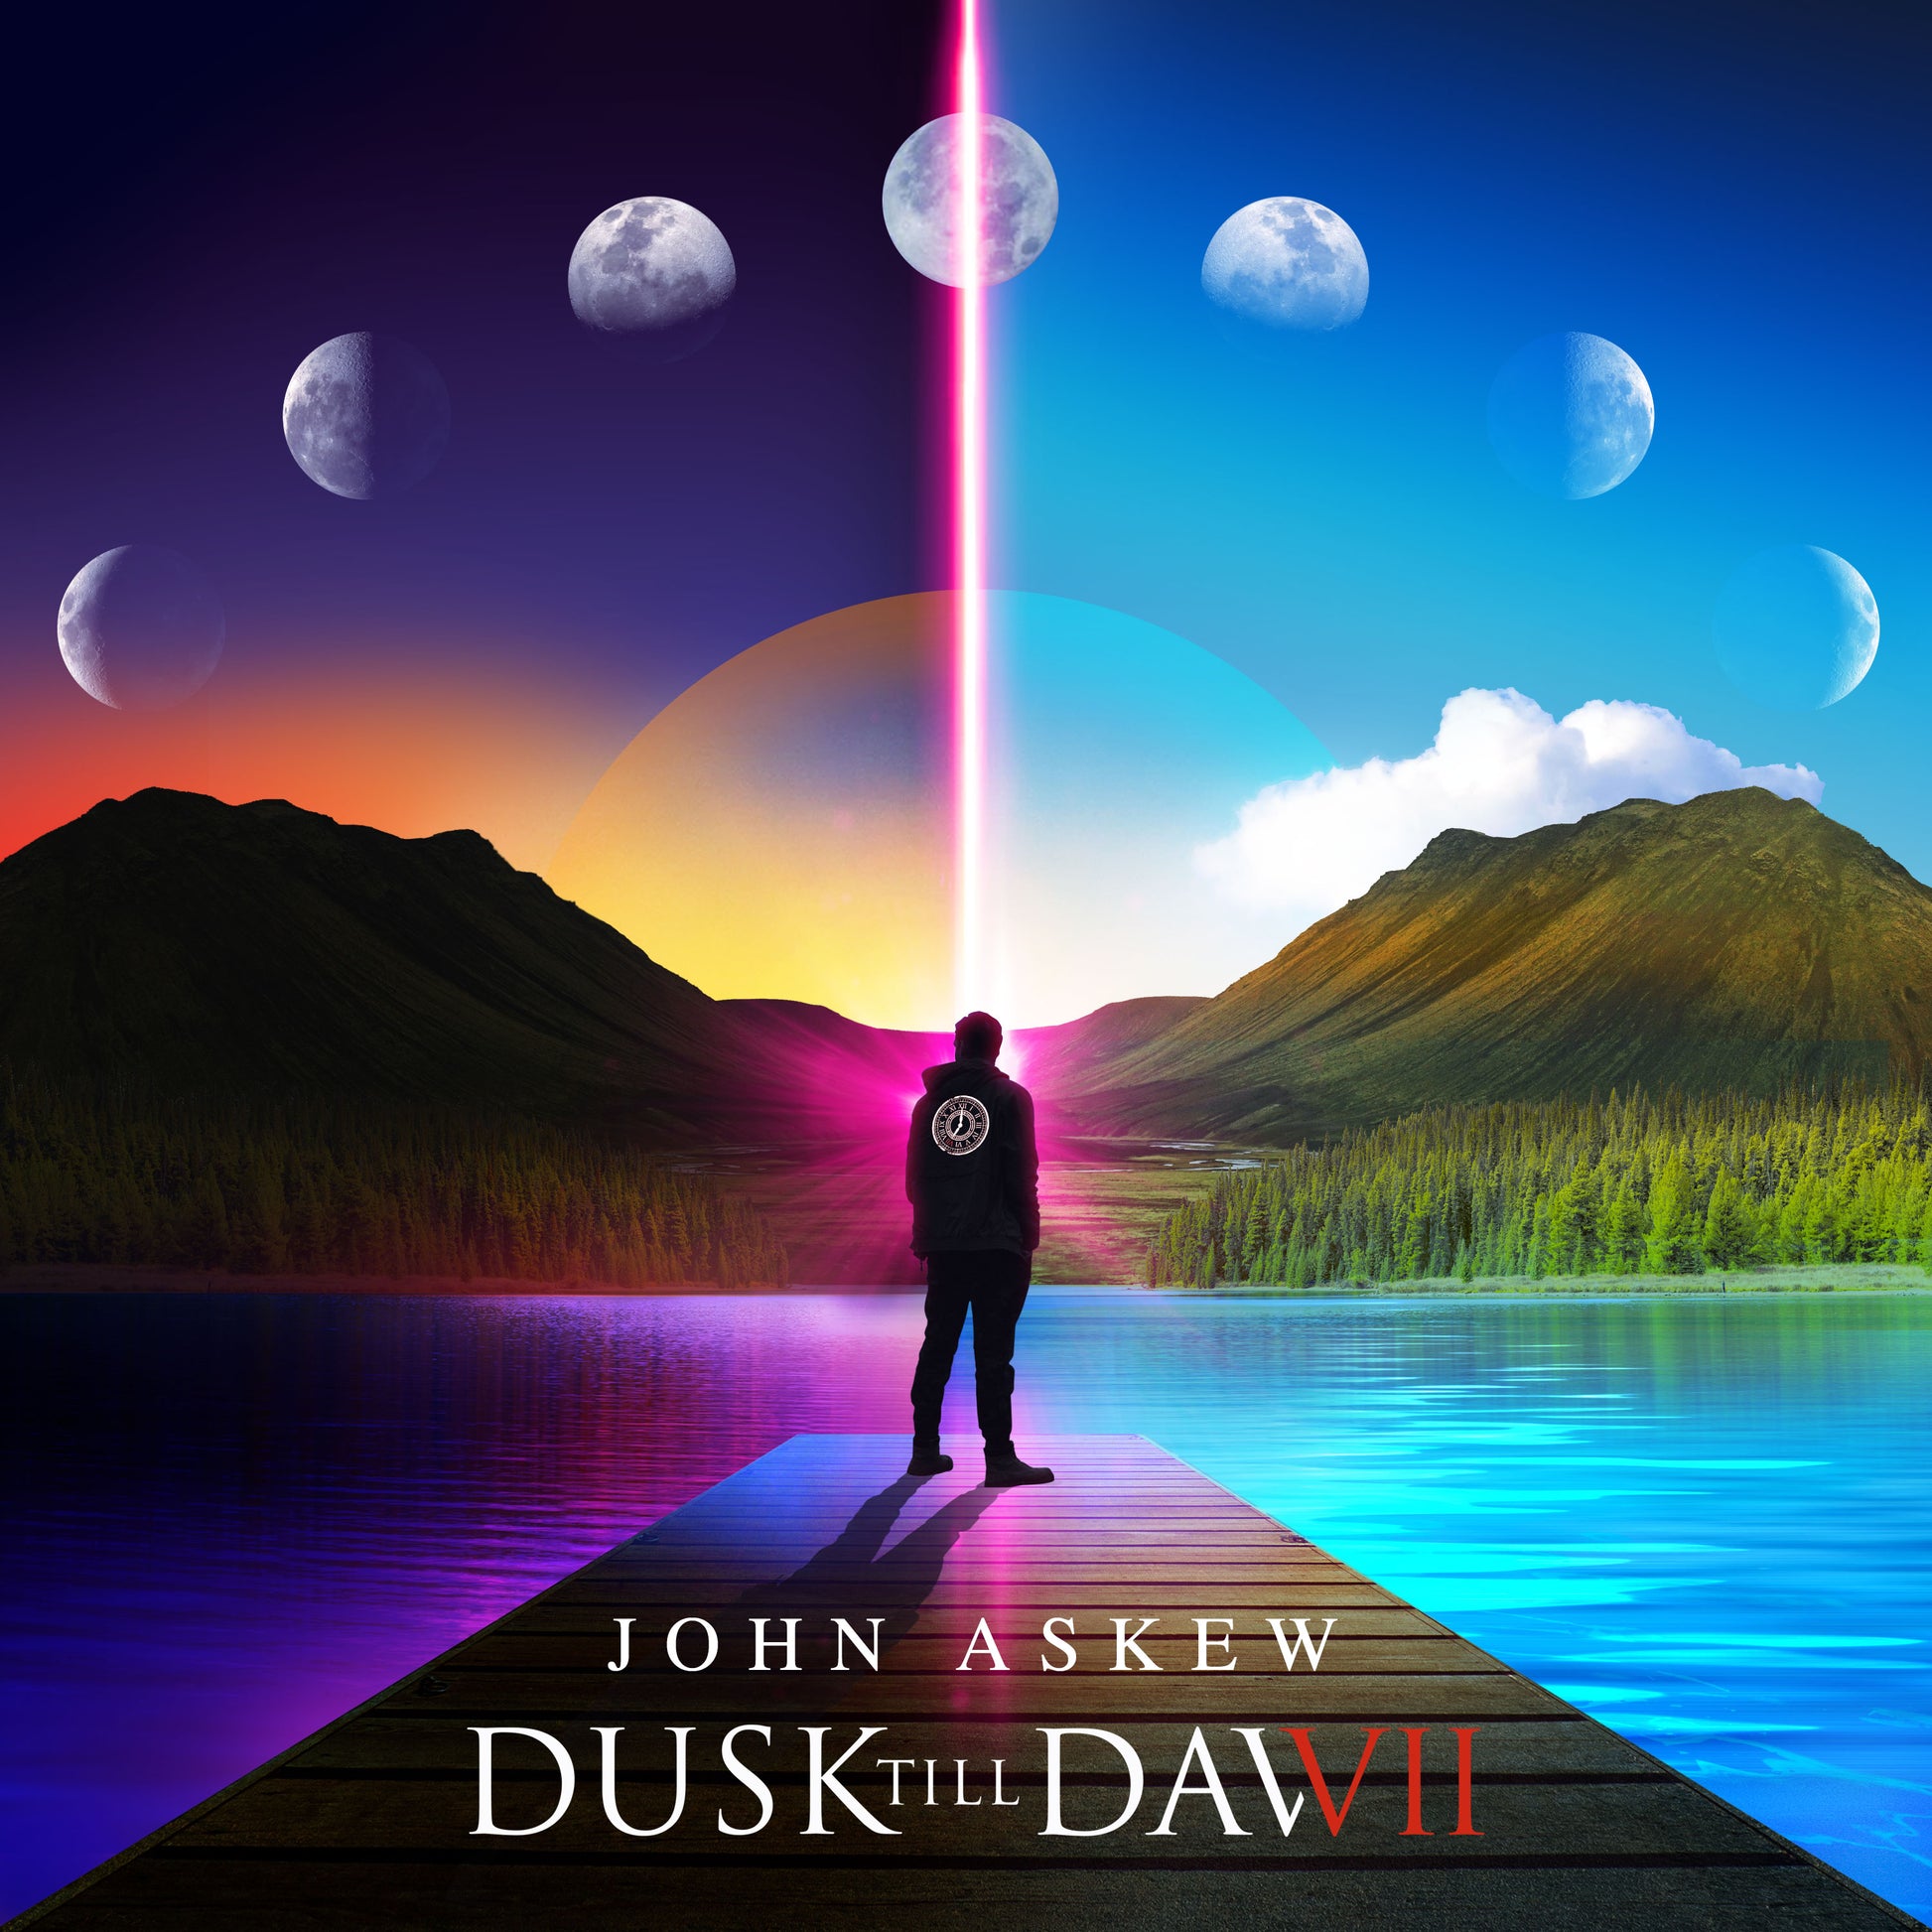 John Askew Dusk Till Dawn